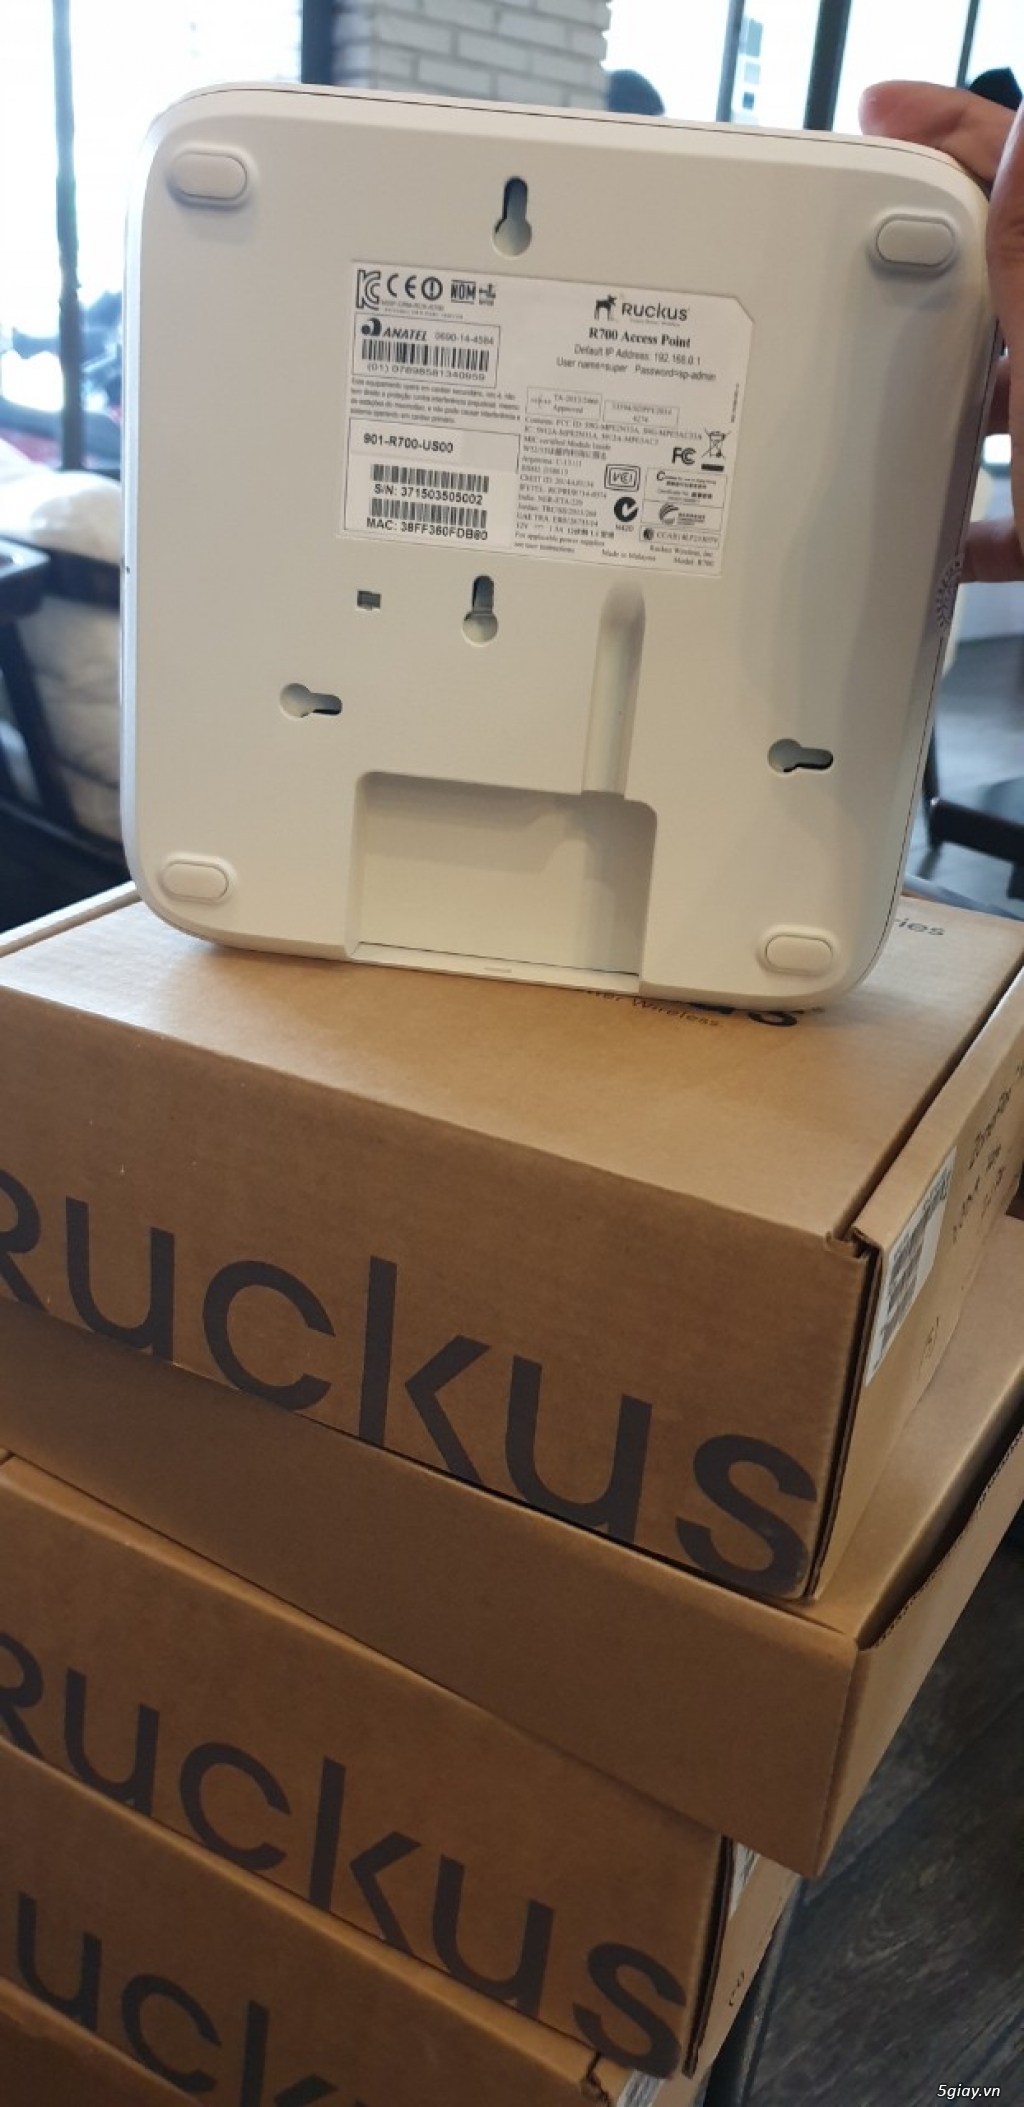 Ruckus R700 Dual Band 802.11ac wifi cao cấp chuẩn AC - Liên hệ giá tốt